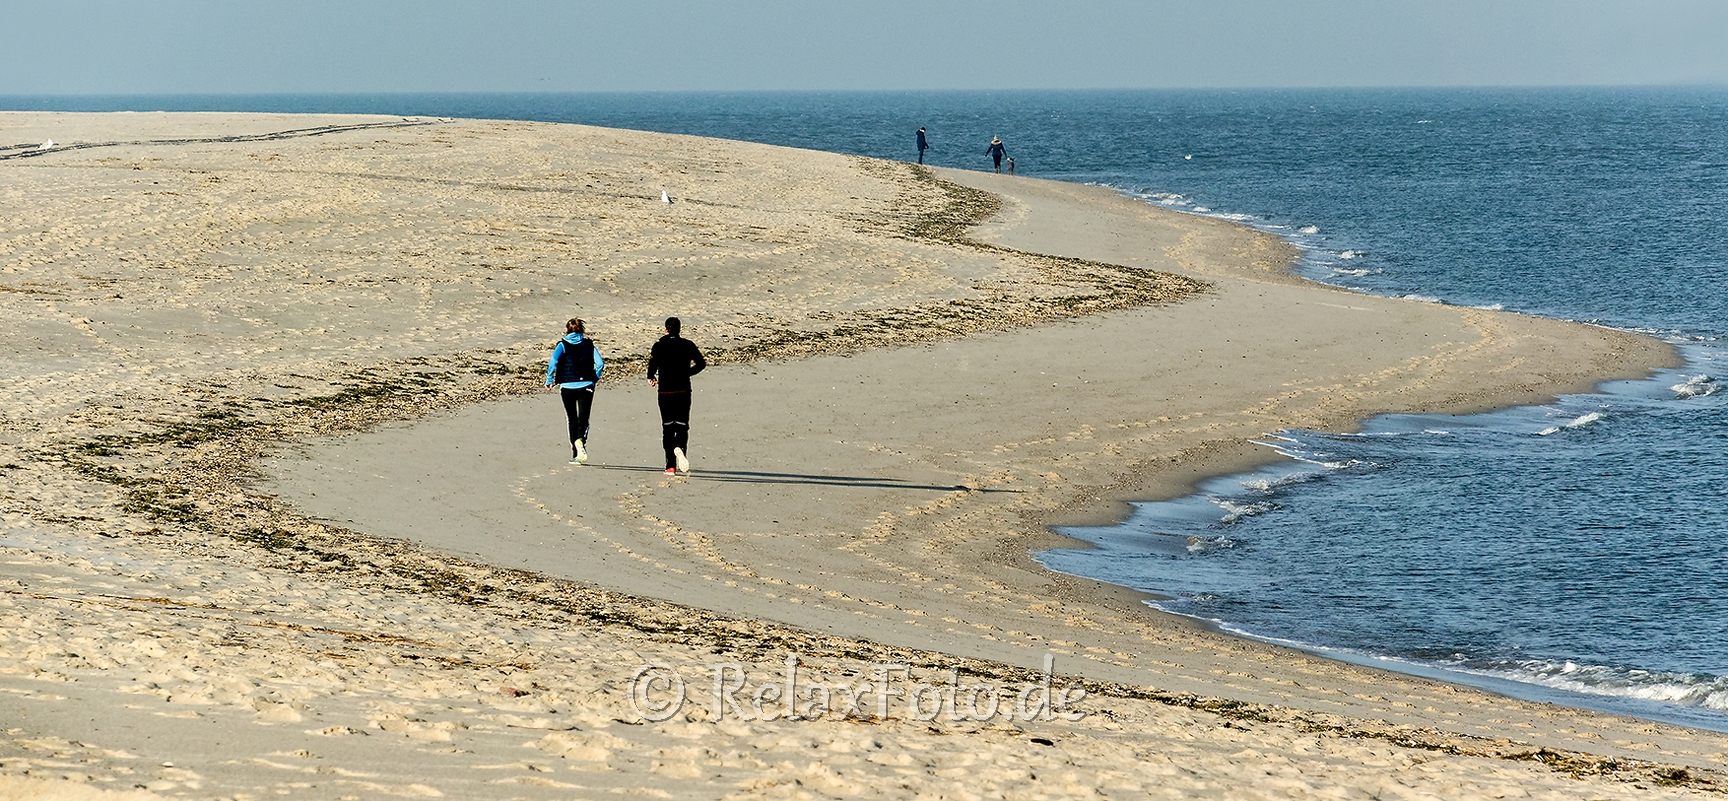 Ellenbogen-Fitness-Jogger-Duenen-Sand-Sylt-Winter-Bilder-Fotos-Strand-Landschaften-RX_01334